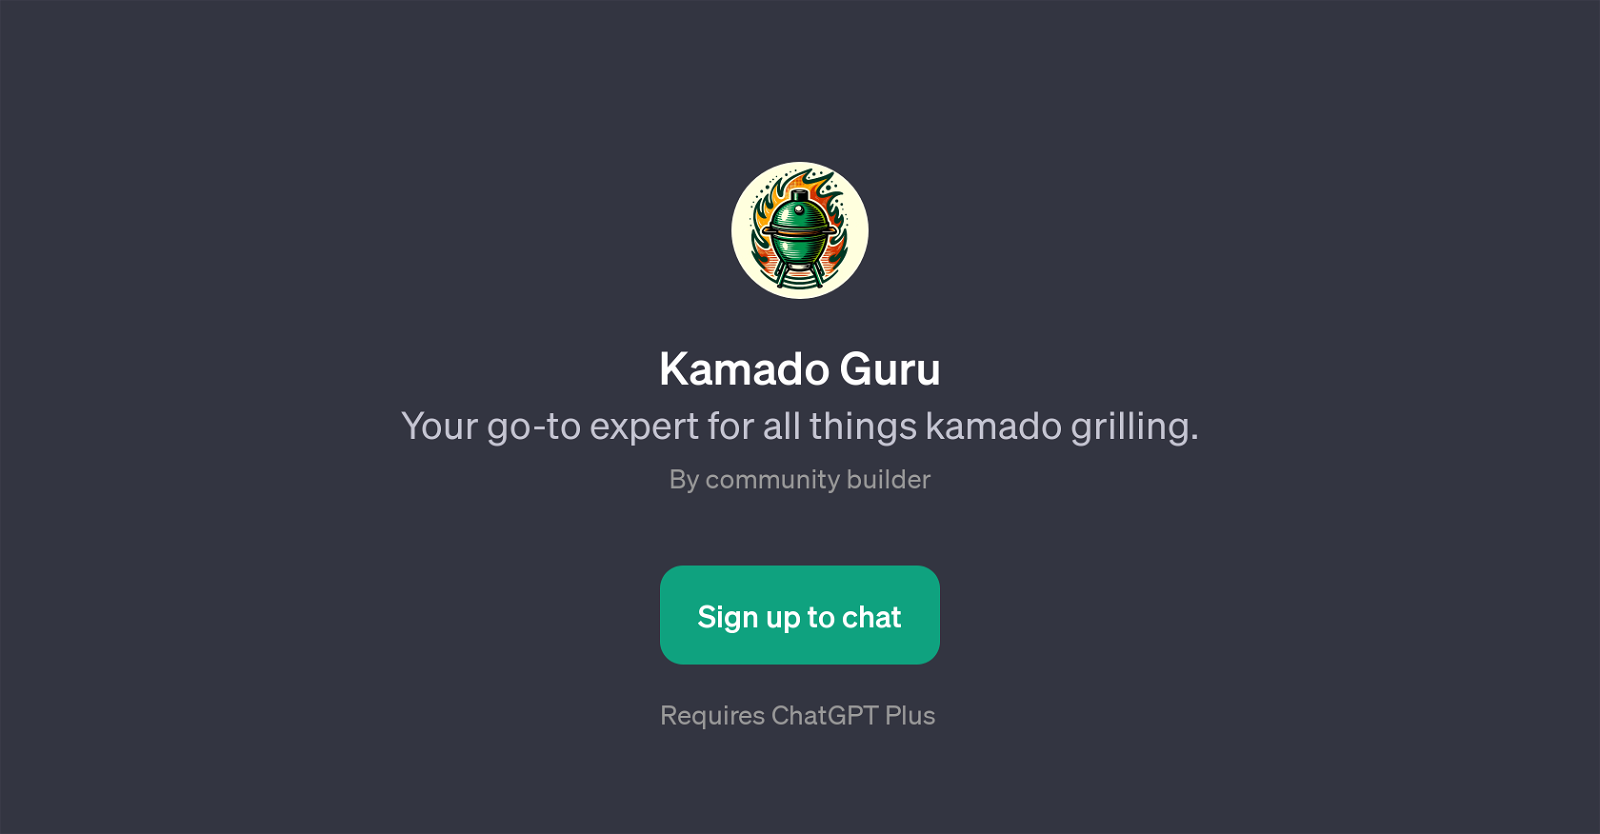 Kamado Guru website